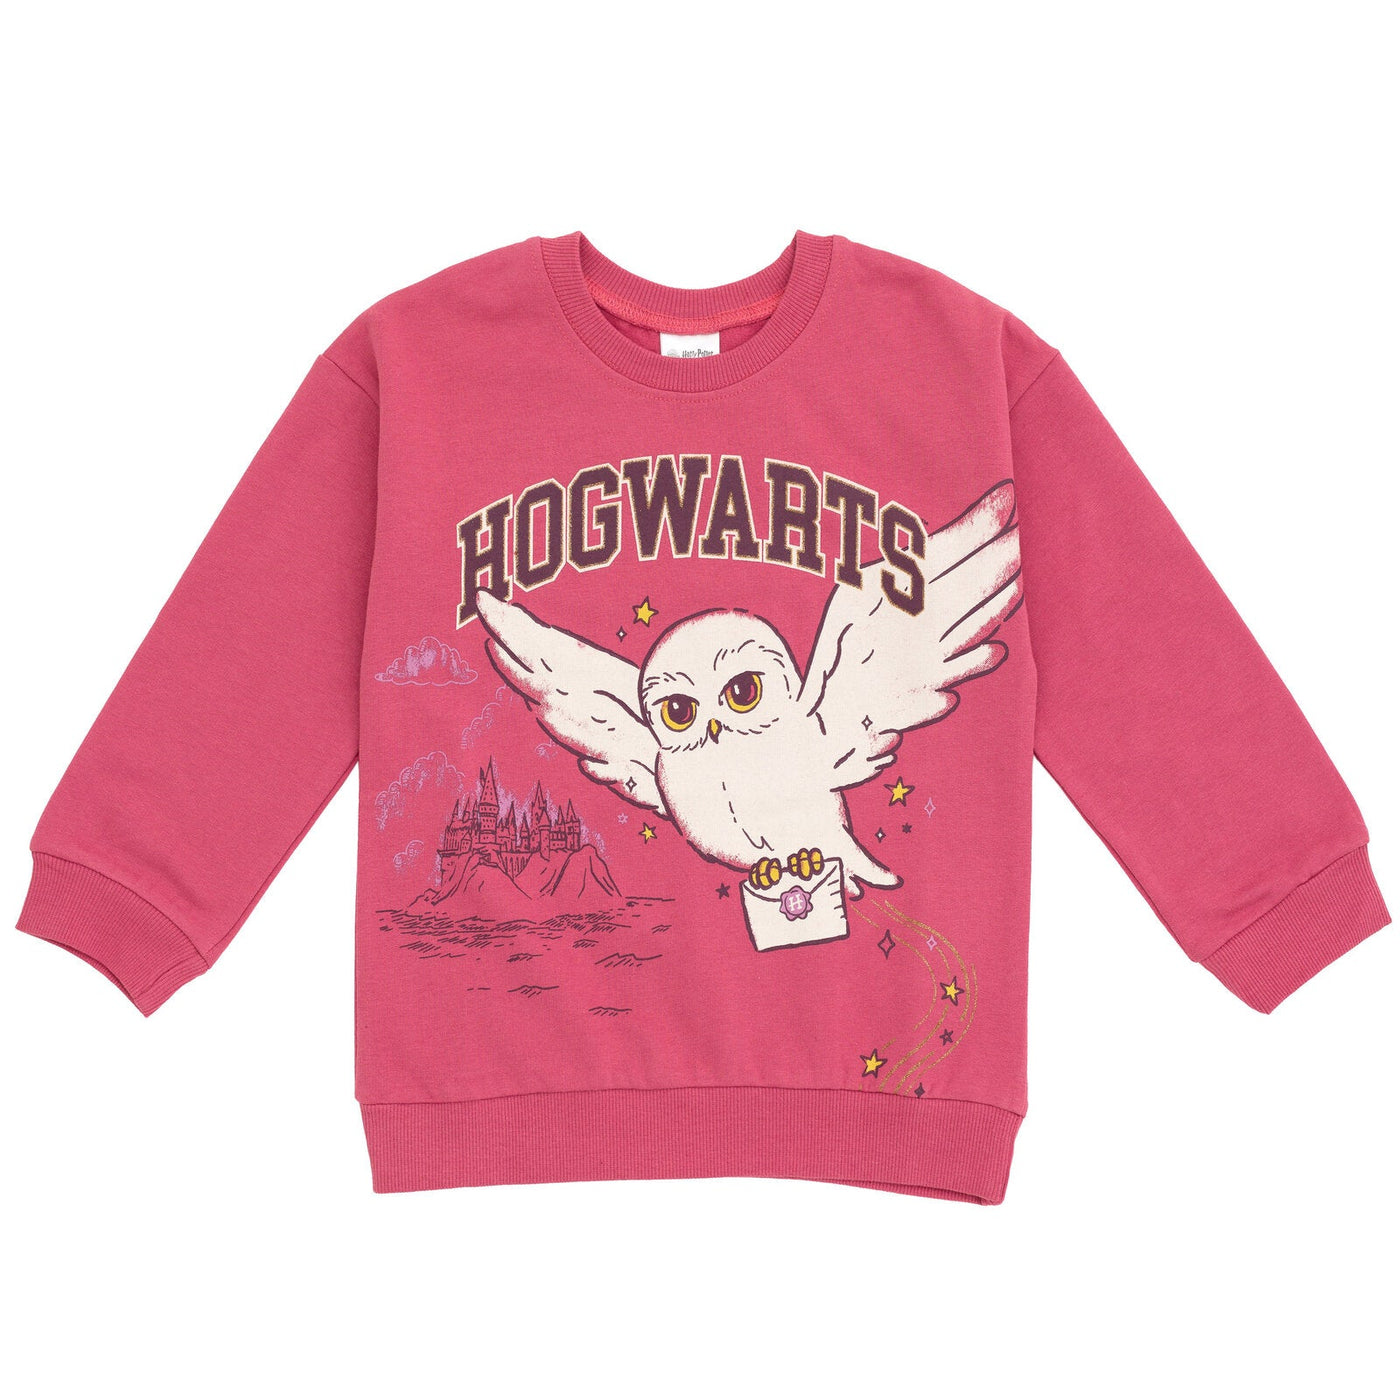 Harry Potter Hedwig Fleece Sweatshirt and Pleated Skirt - imagikids